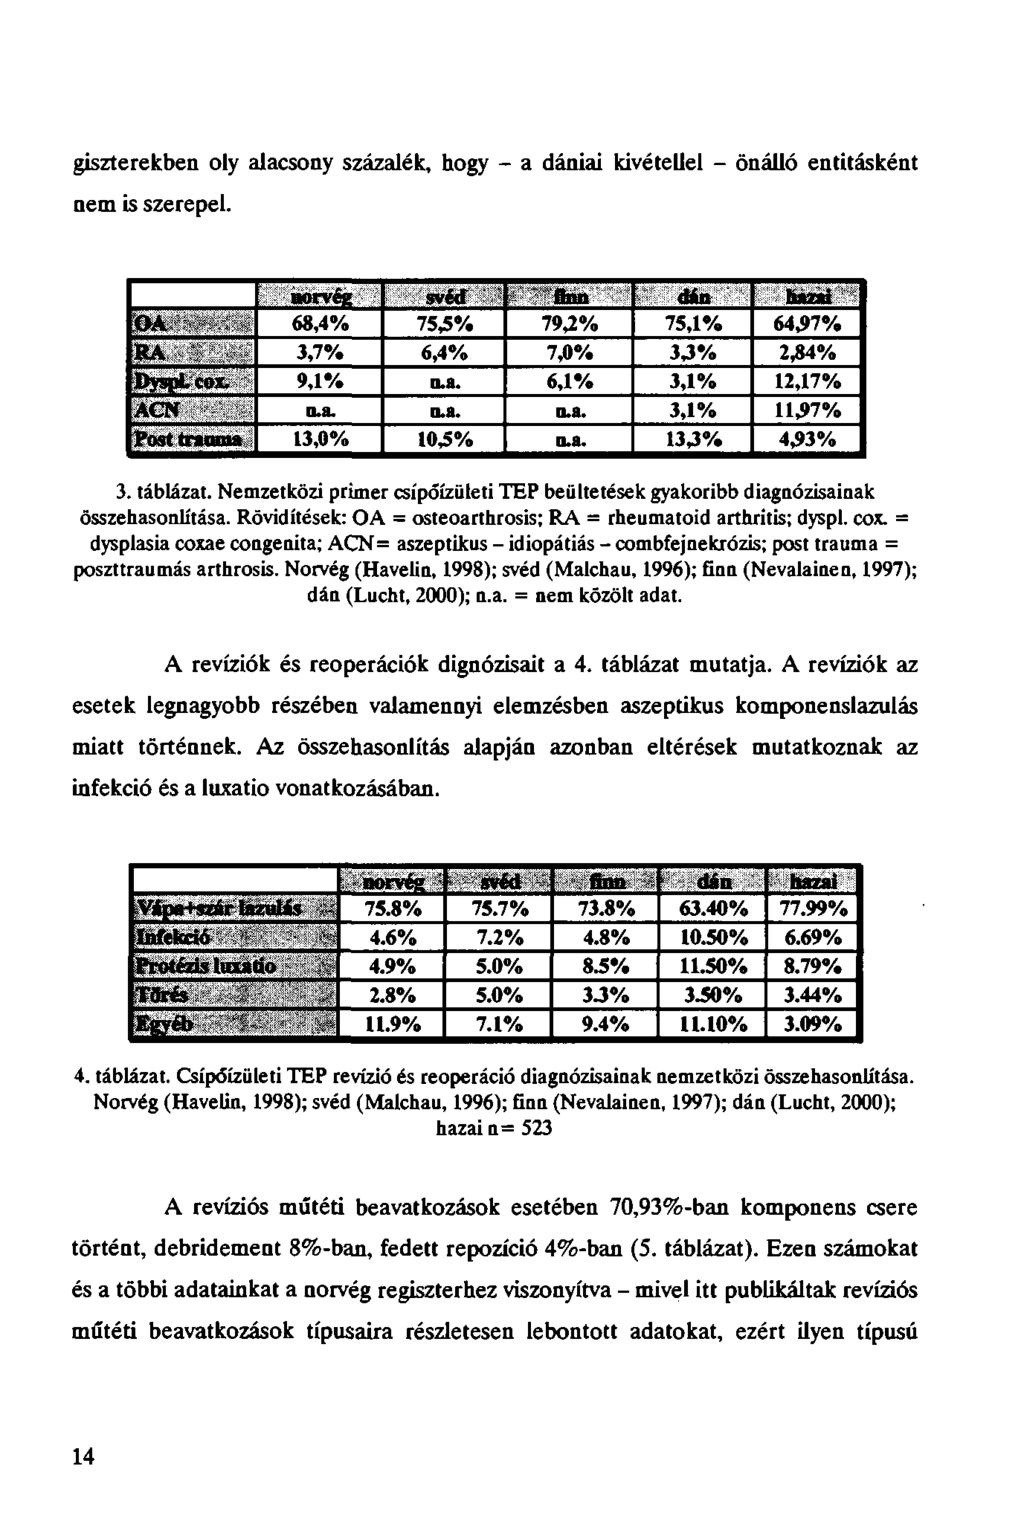 giszterekben oly alacsony százalék, hogy - a dániai kivétellel - önálló entitásként nem is szerepel. norvéz svéd flnii dán h«wi 0 \ 68,4% 75,5% 793% 75,1% 6437% RA 3,7% 6,4% 7,0% 33% 234% DyspLcox.